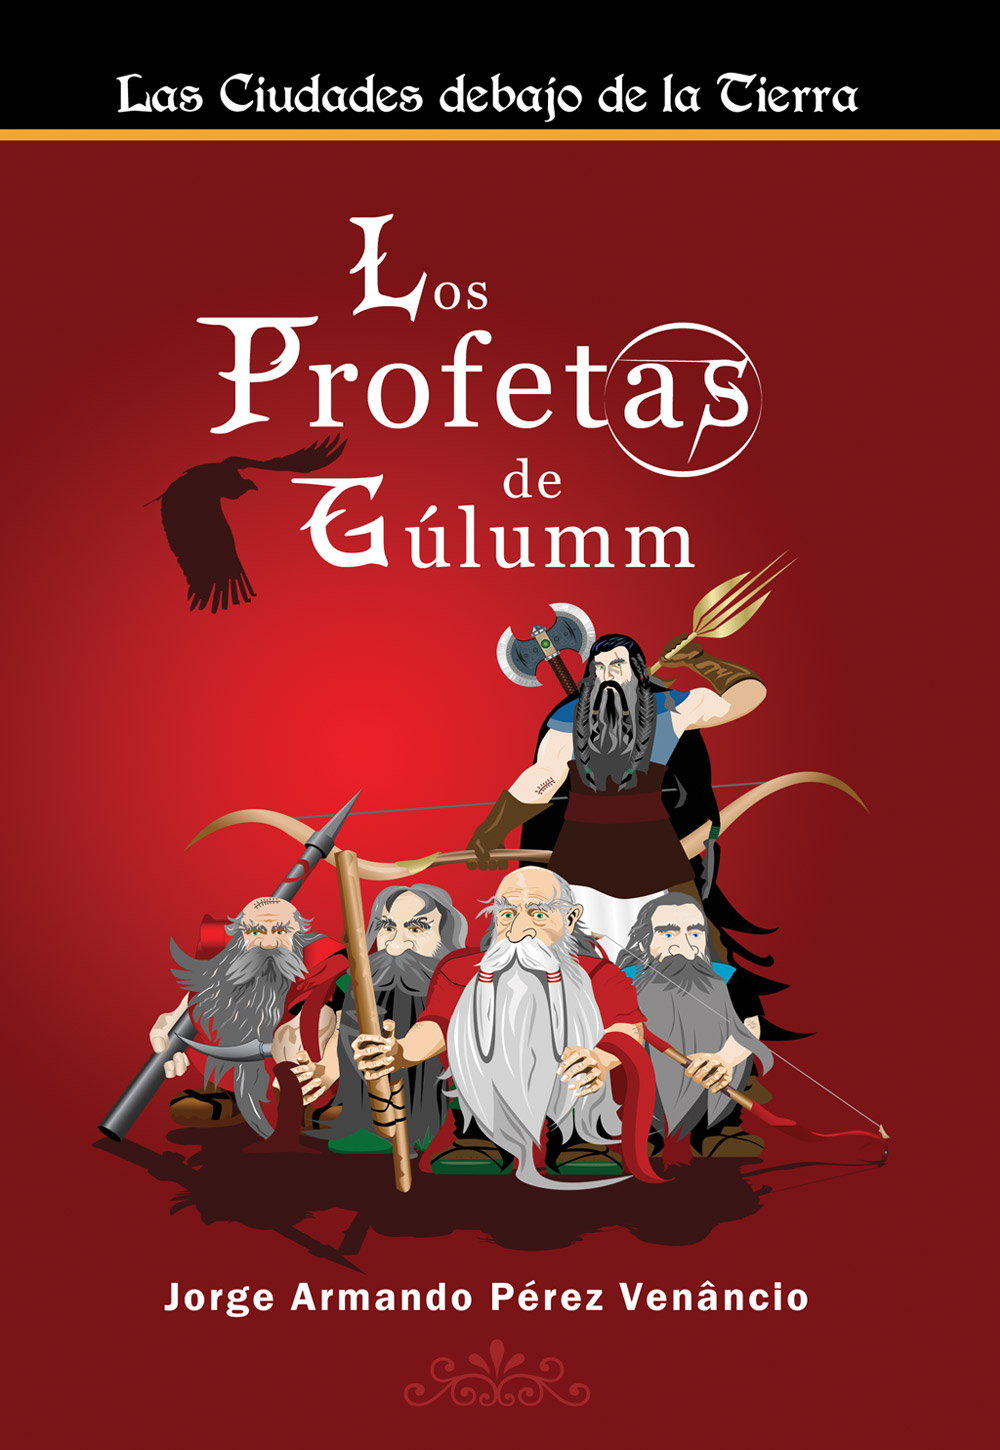 Los Profetas de Gúlumm